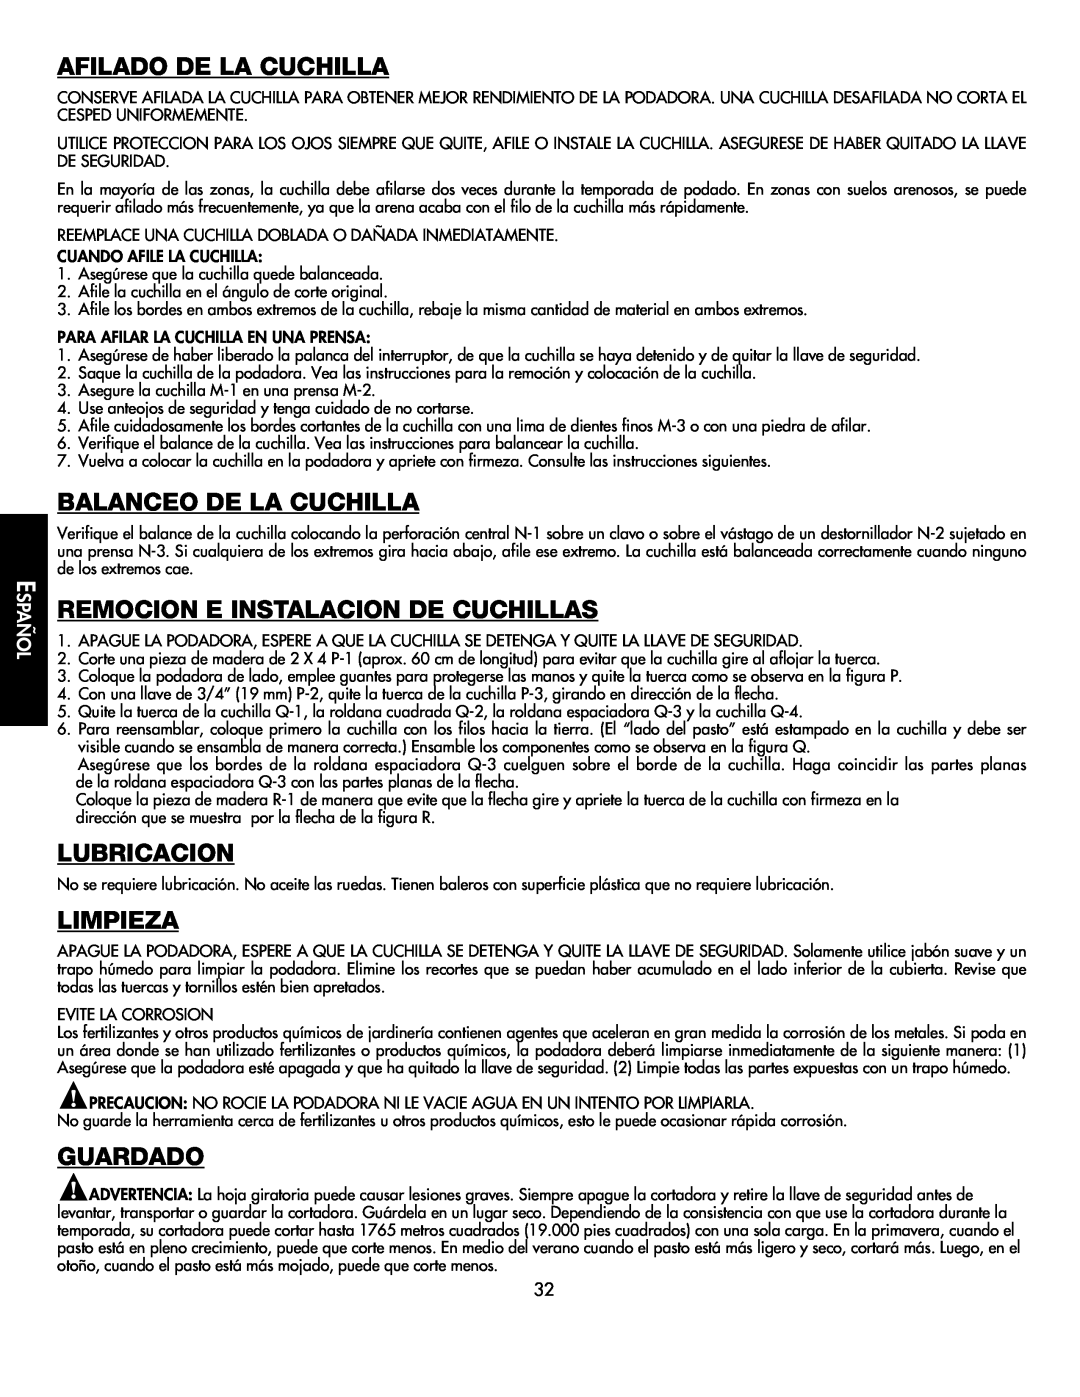 Black & Decker CMM1000 Afilado De La Cuchilla, Balanceo De La Cuchilla, Remocion E Instalacion De Cuchillas, Lubricacion 